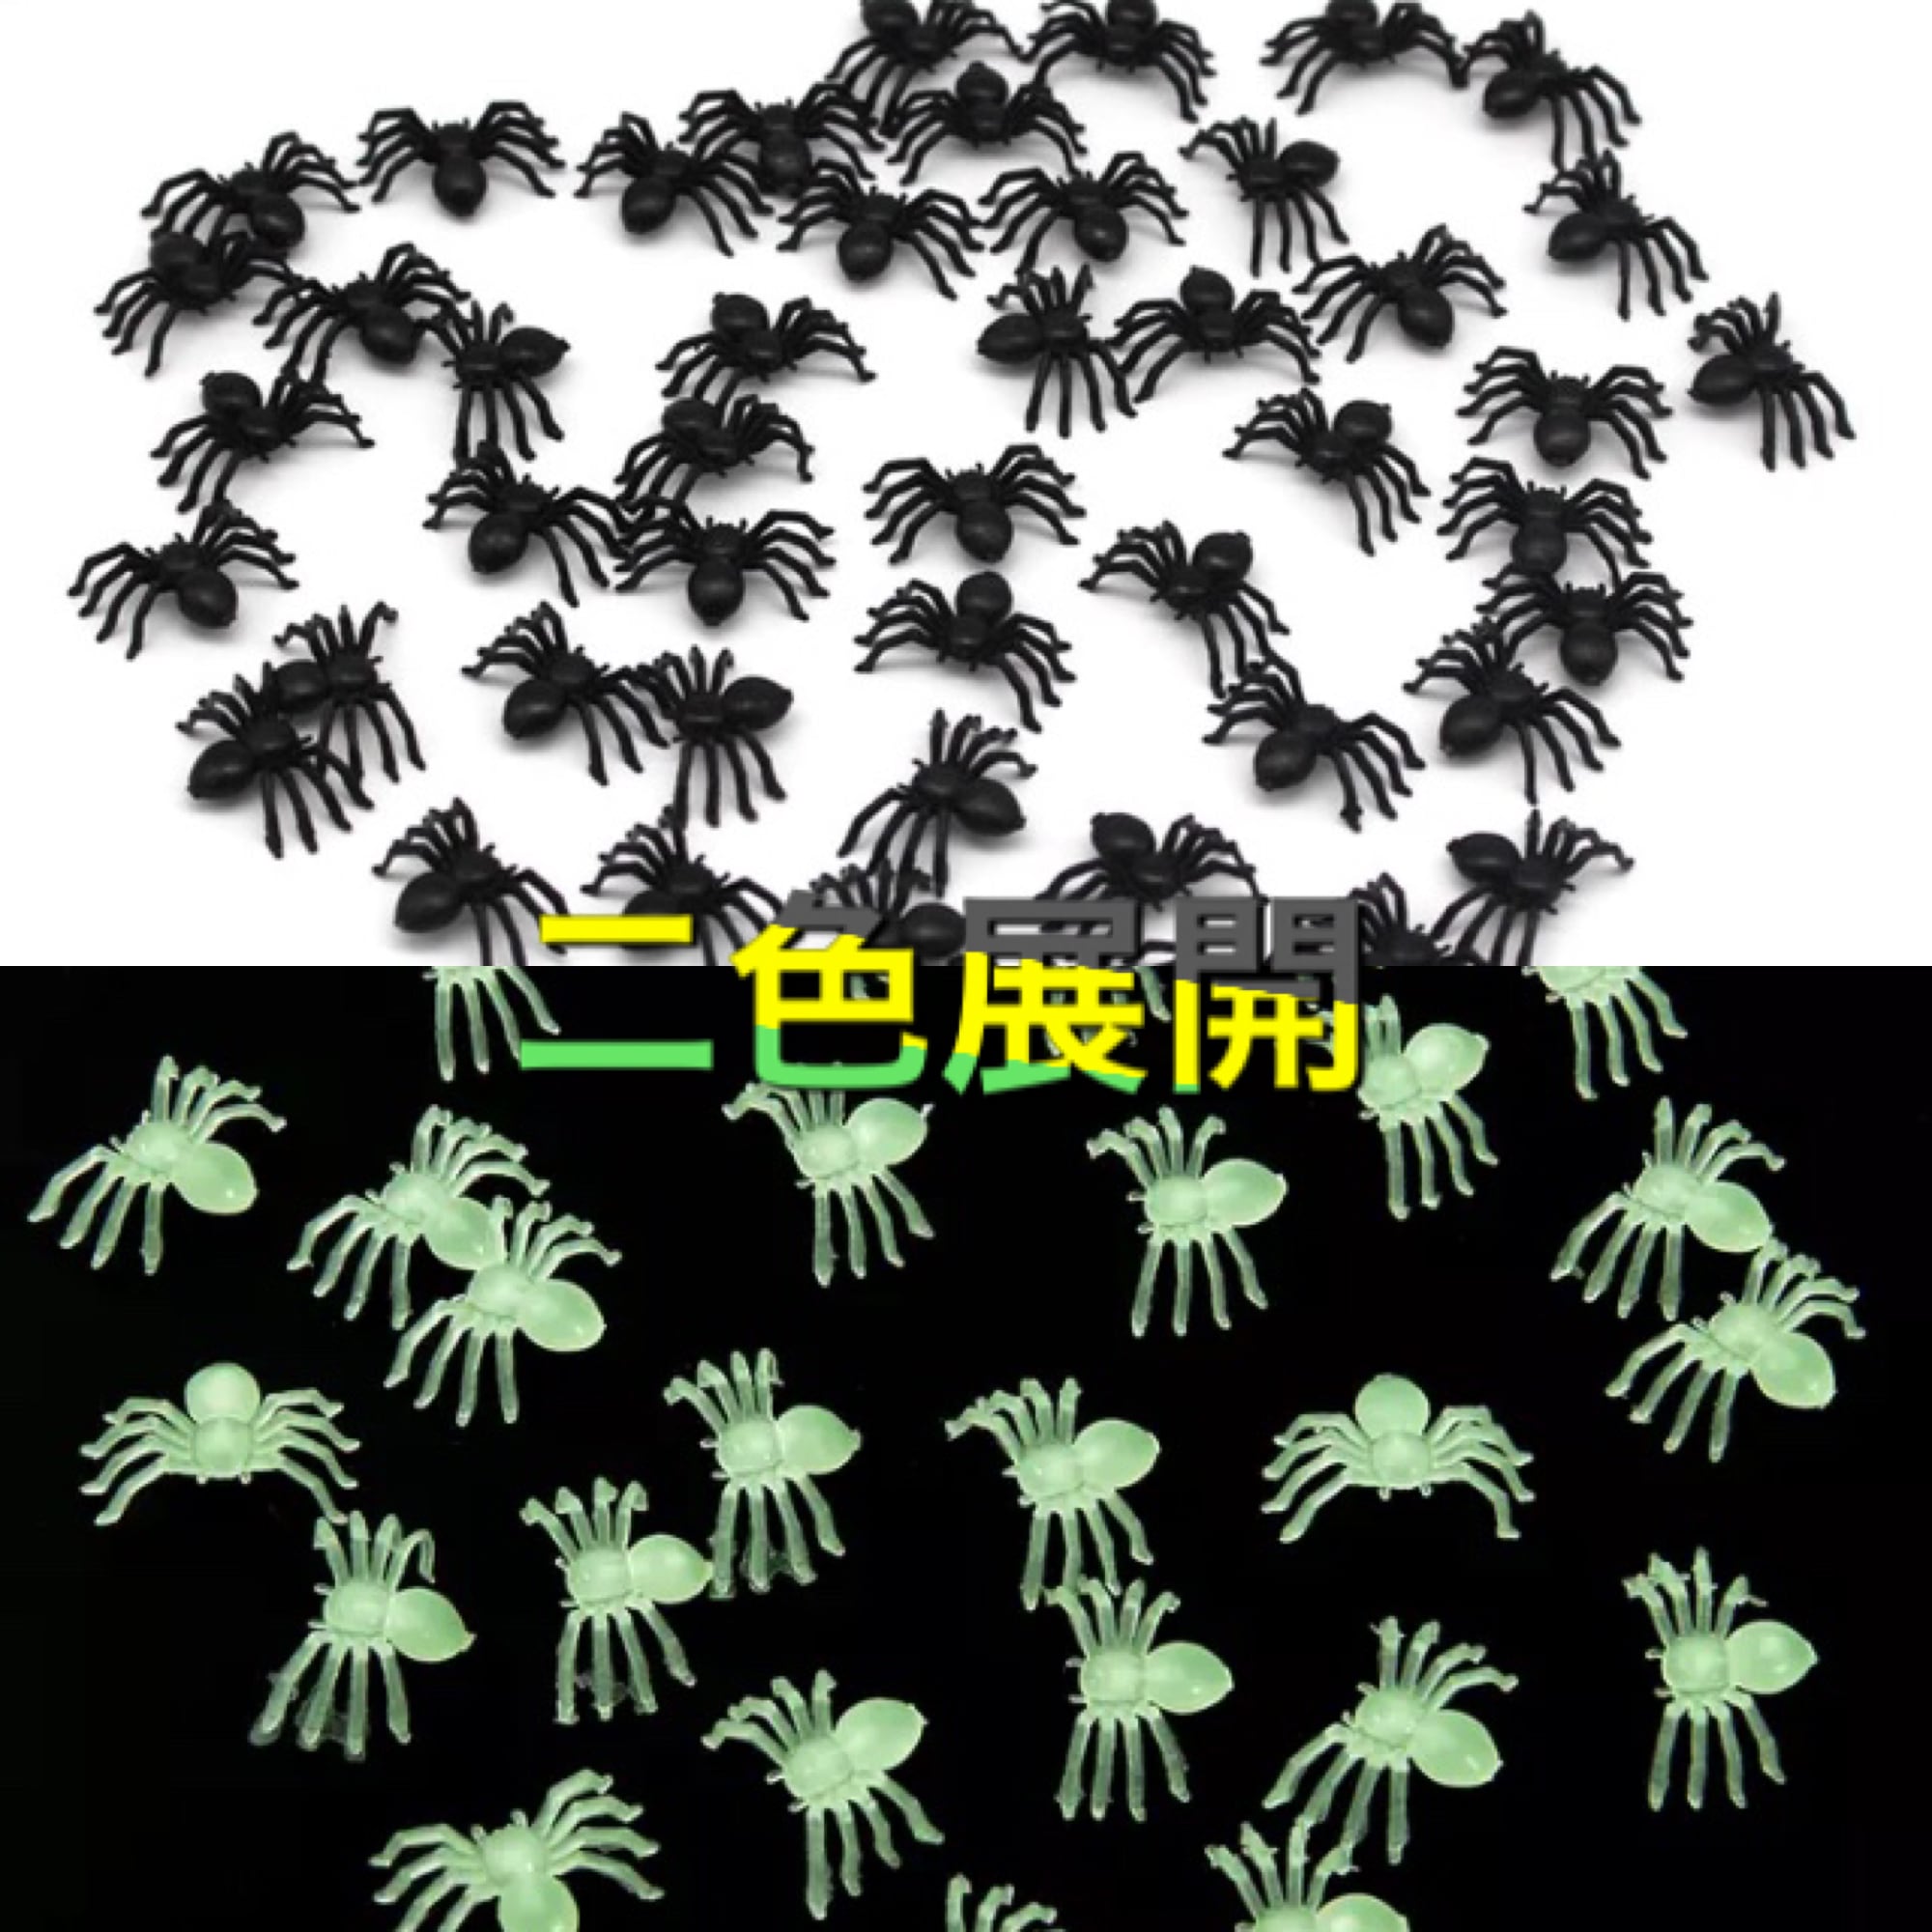 蜘蛛/クモ ミニチュアおもちゃ 12体セット インテリア・デコパーツにも 【即納】 honeyhonesty